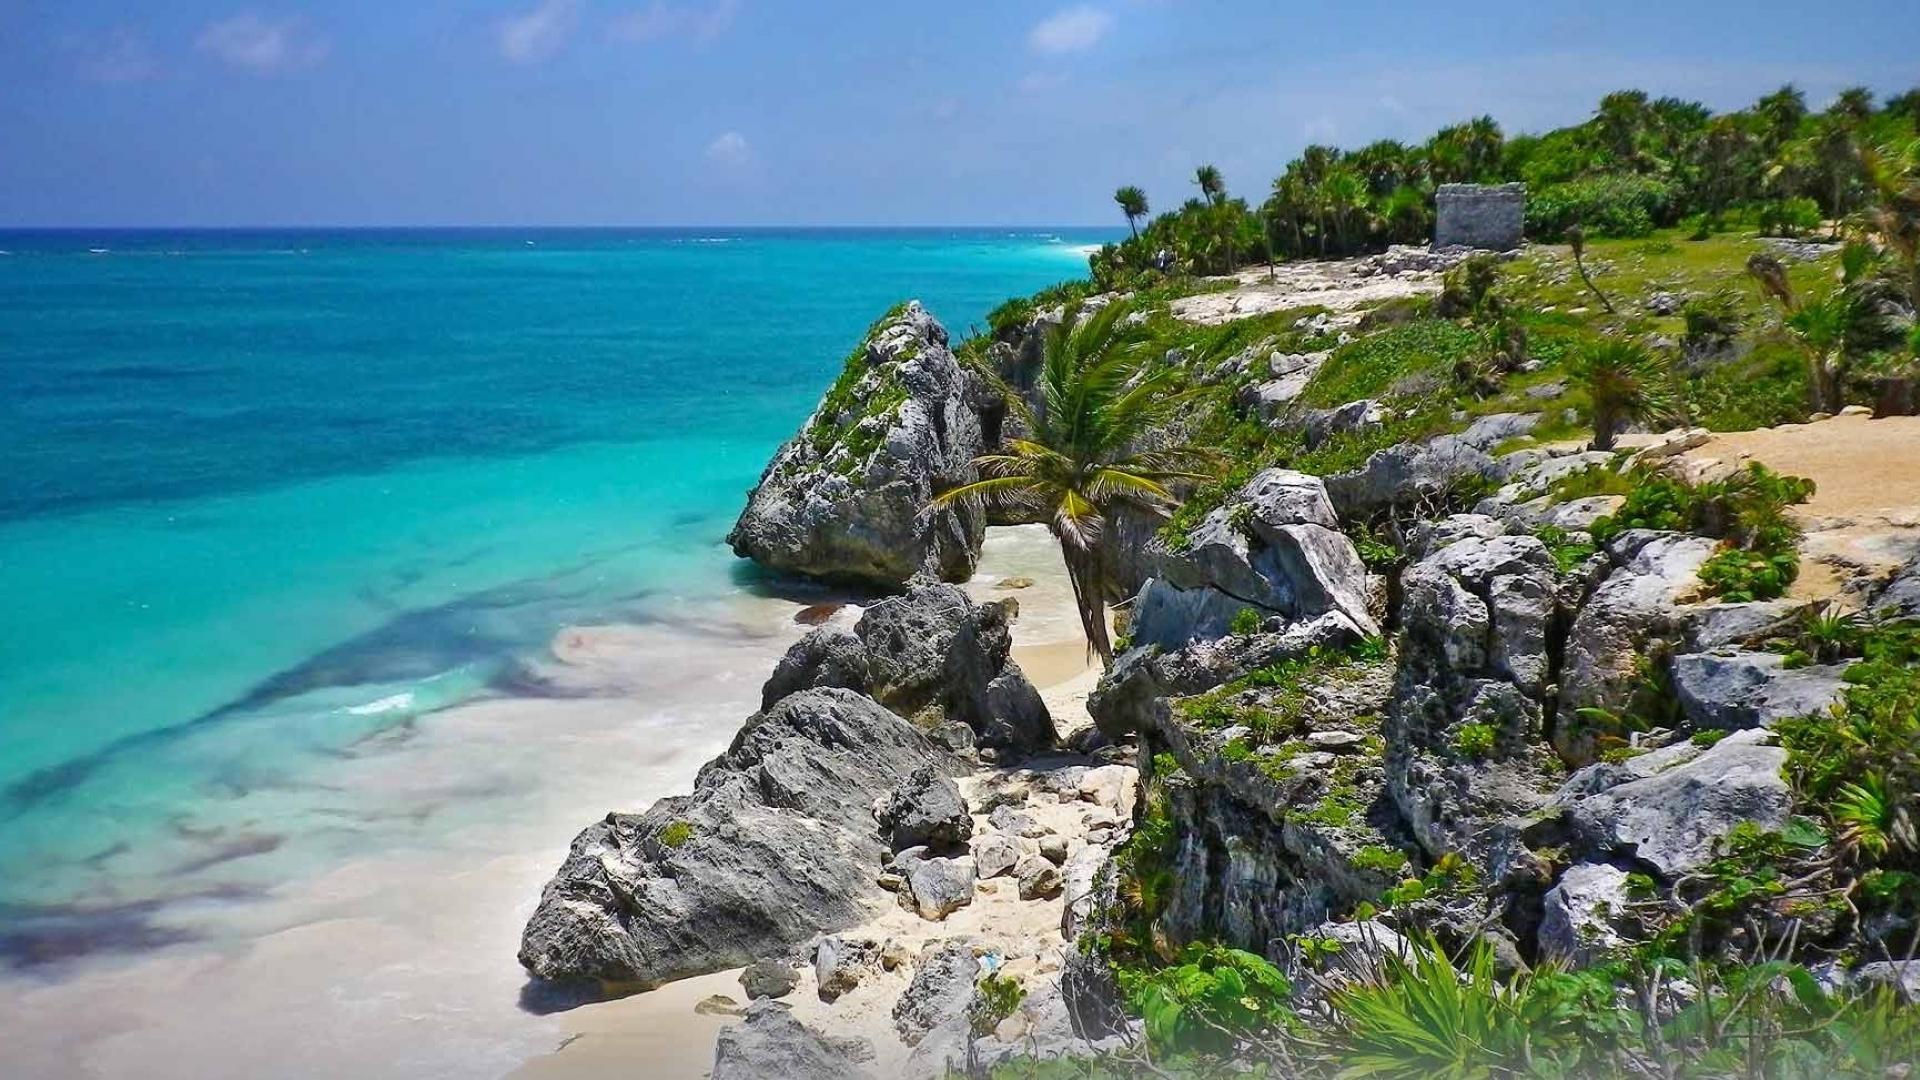 Mexico sian tulum beaches green wallpaper